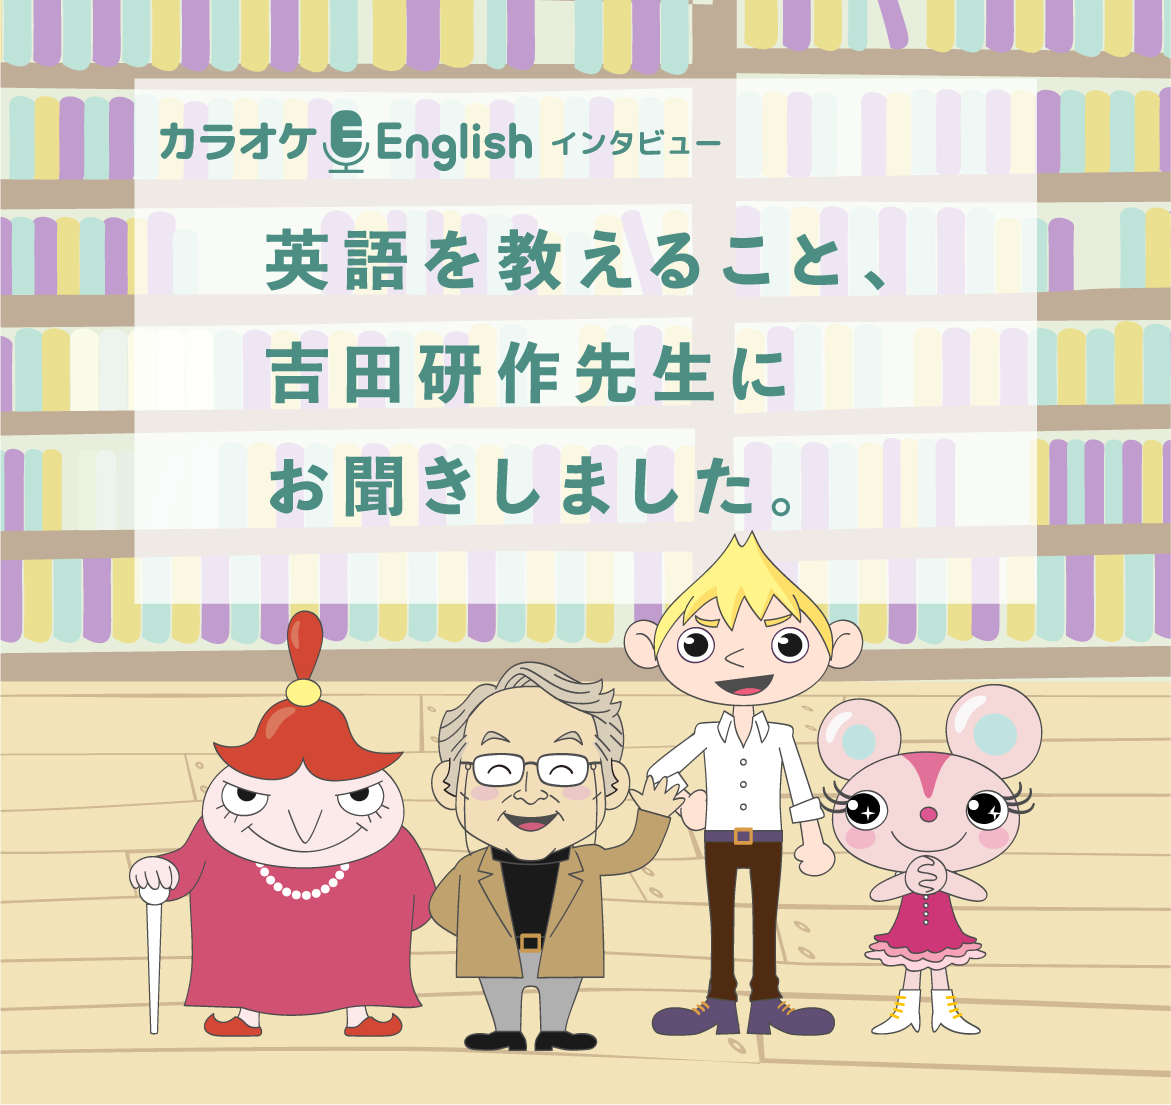 英語を教えること、吉田研作先生にお聞きしました。